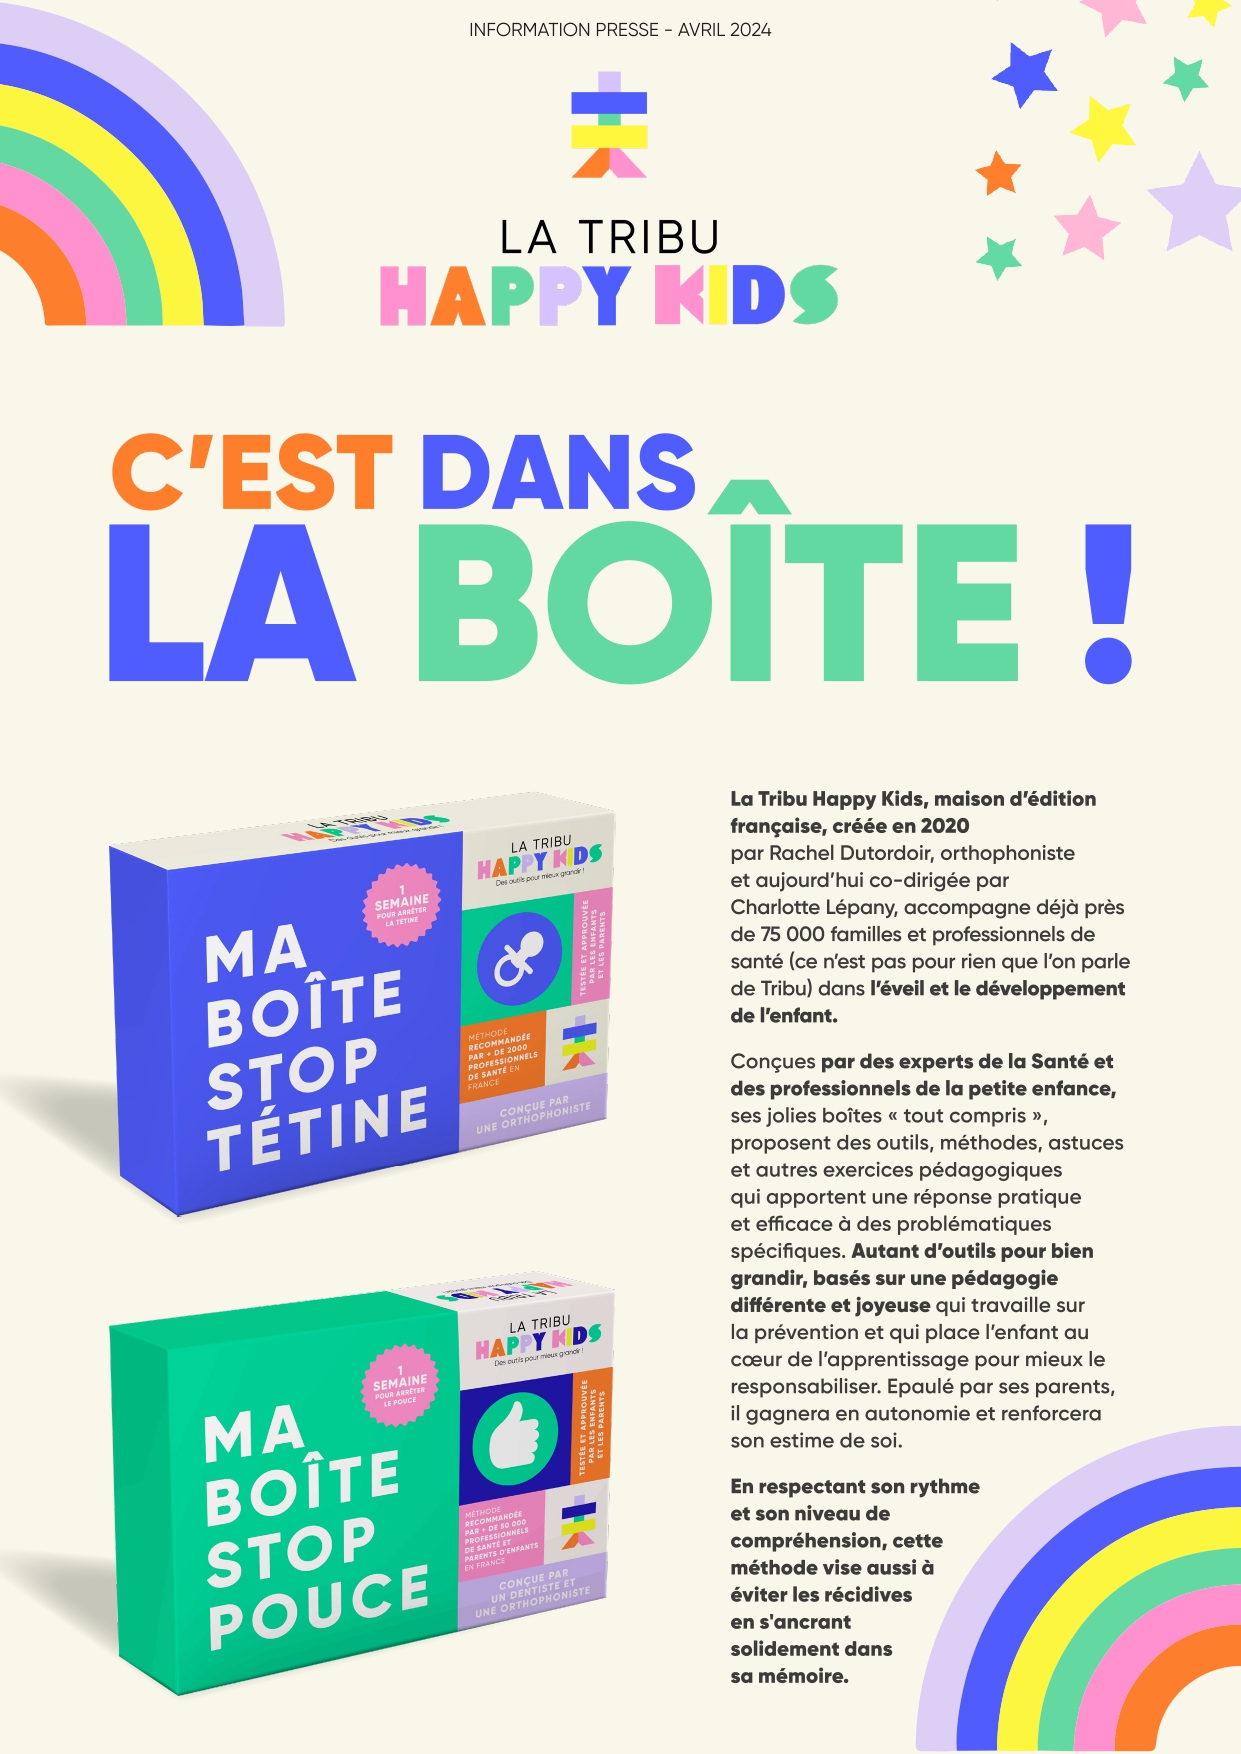 LA TRIBU HAPPY KIDS | Boîte Stop Tétine et Boîte Stop Pouce